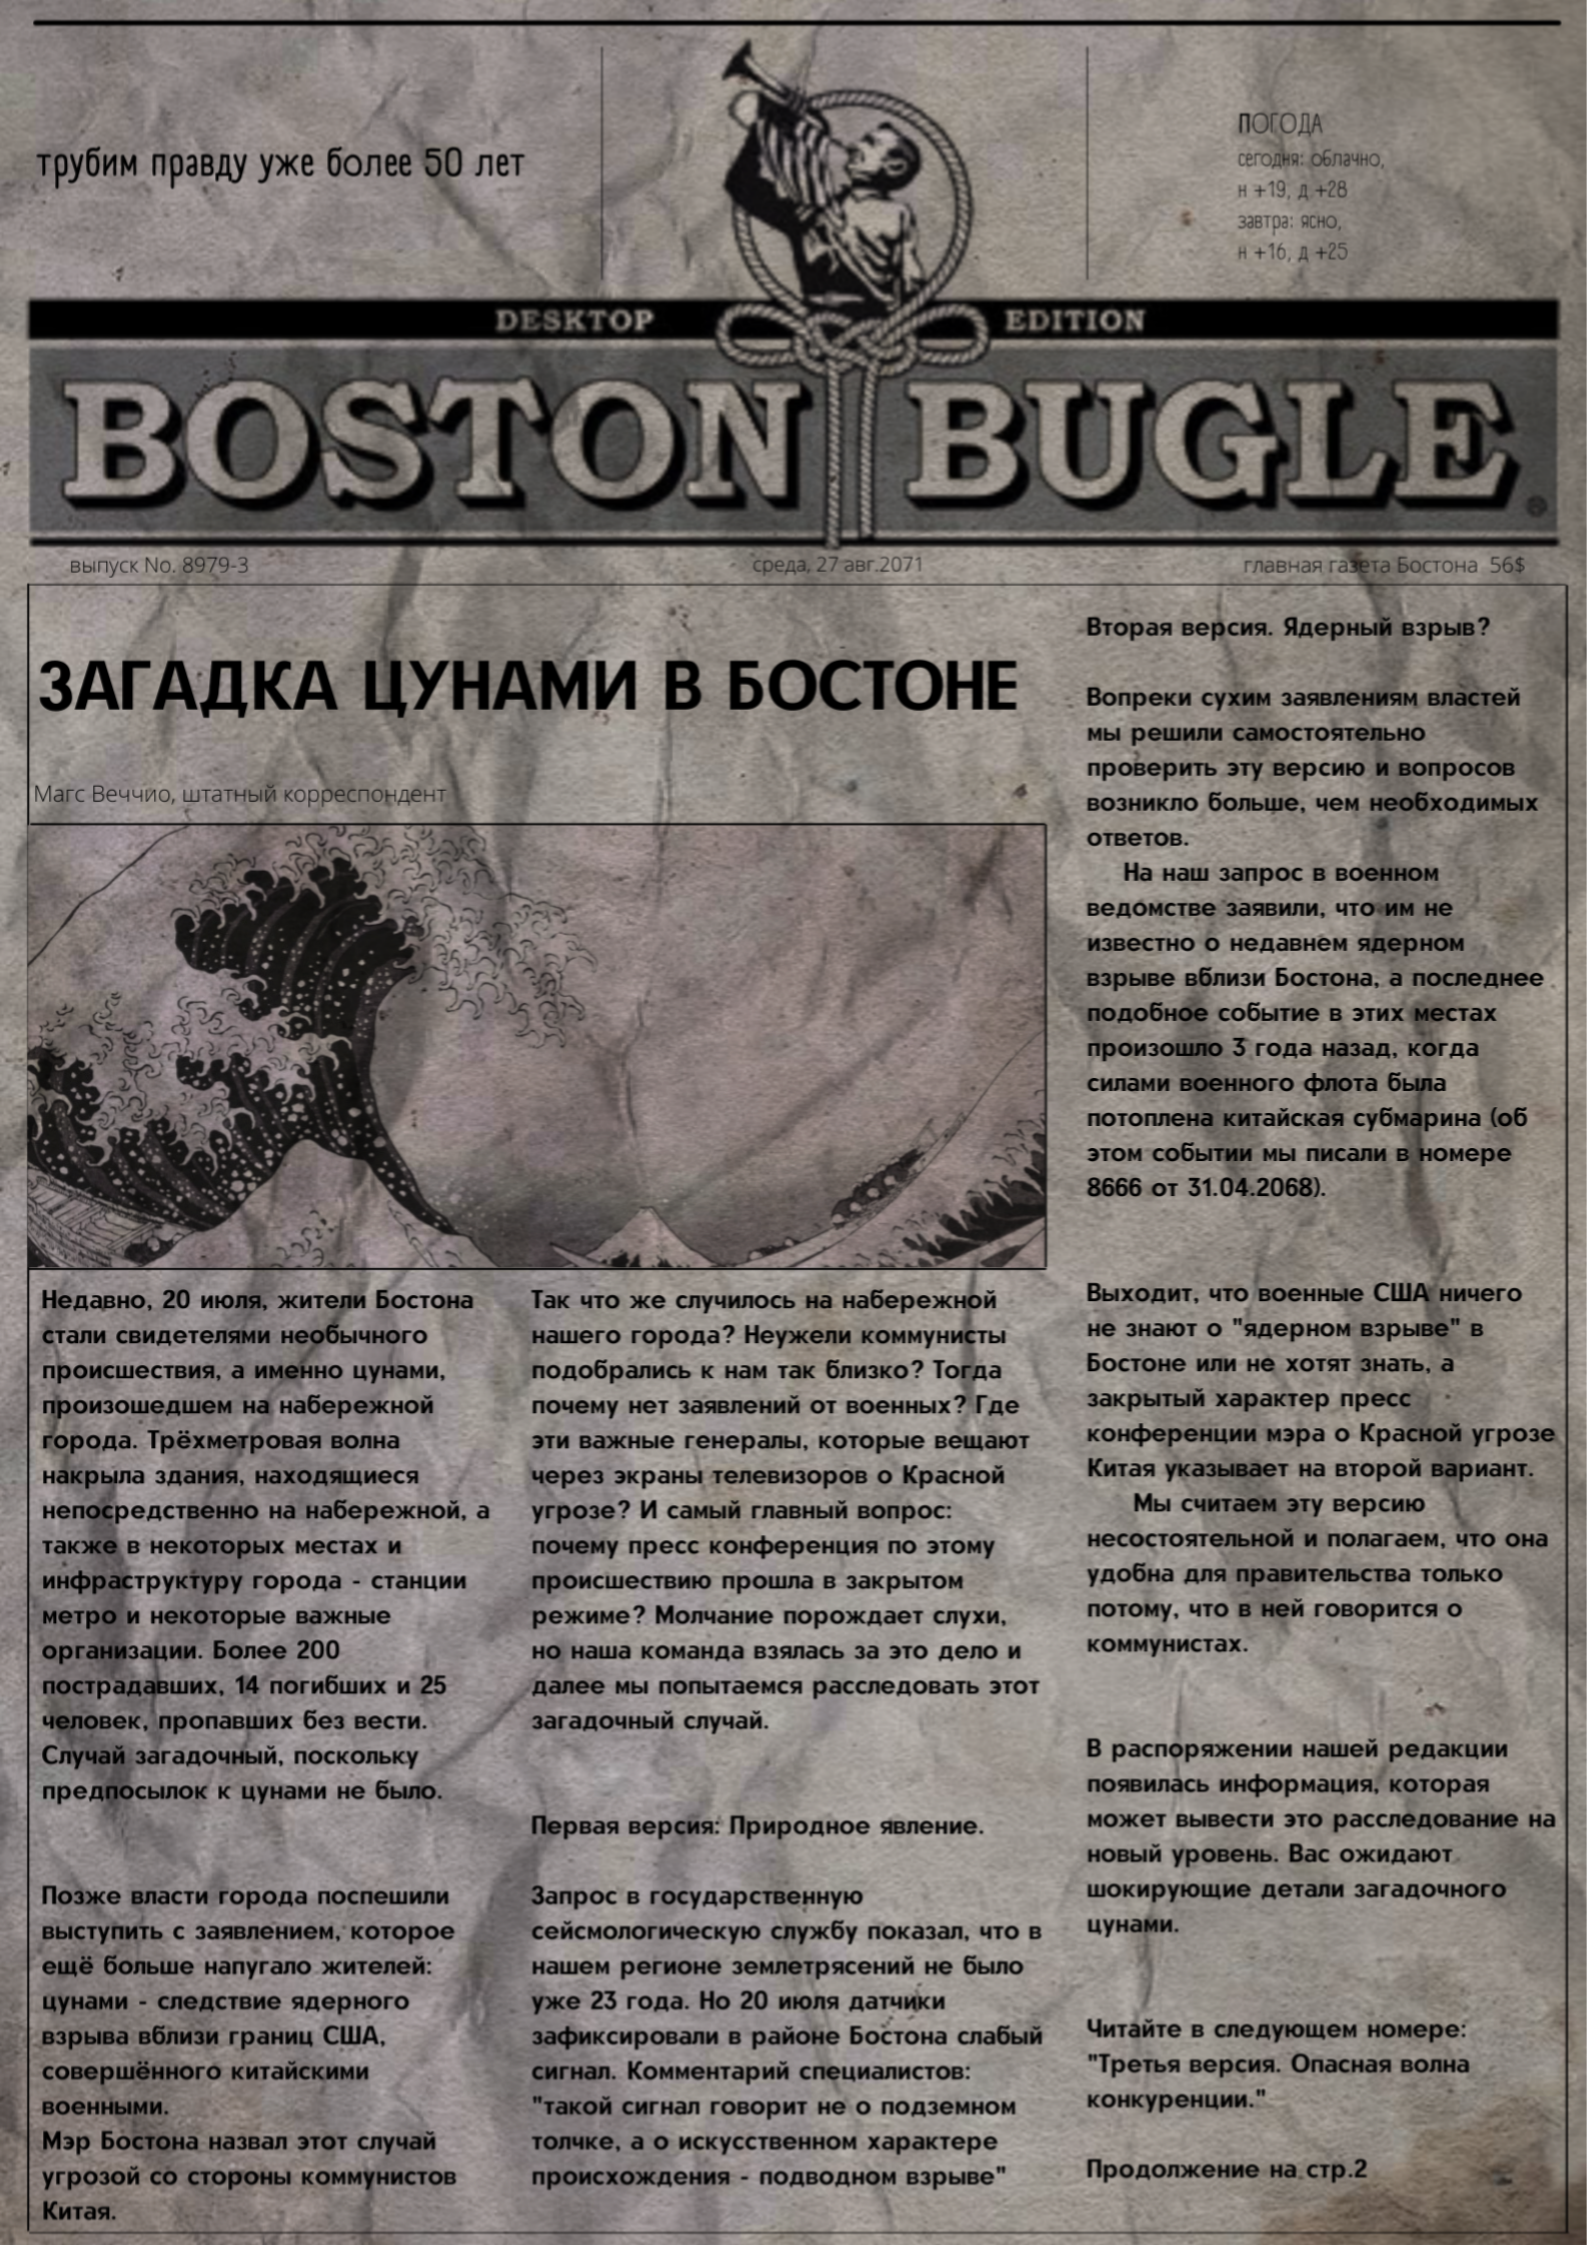 Boston bugle fallout 4